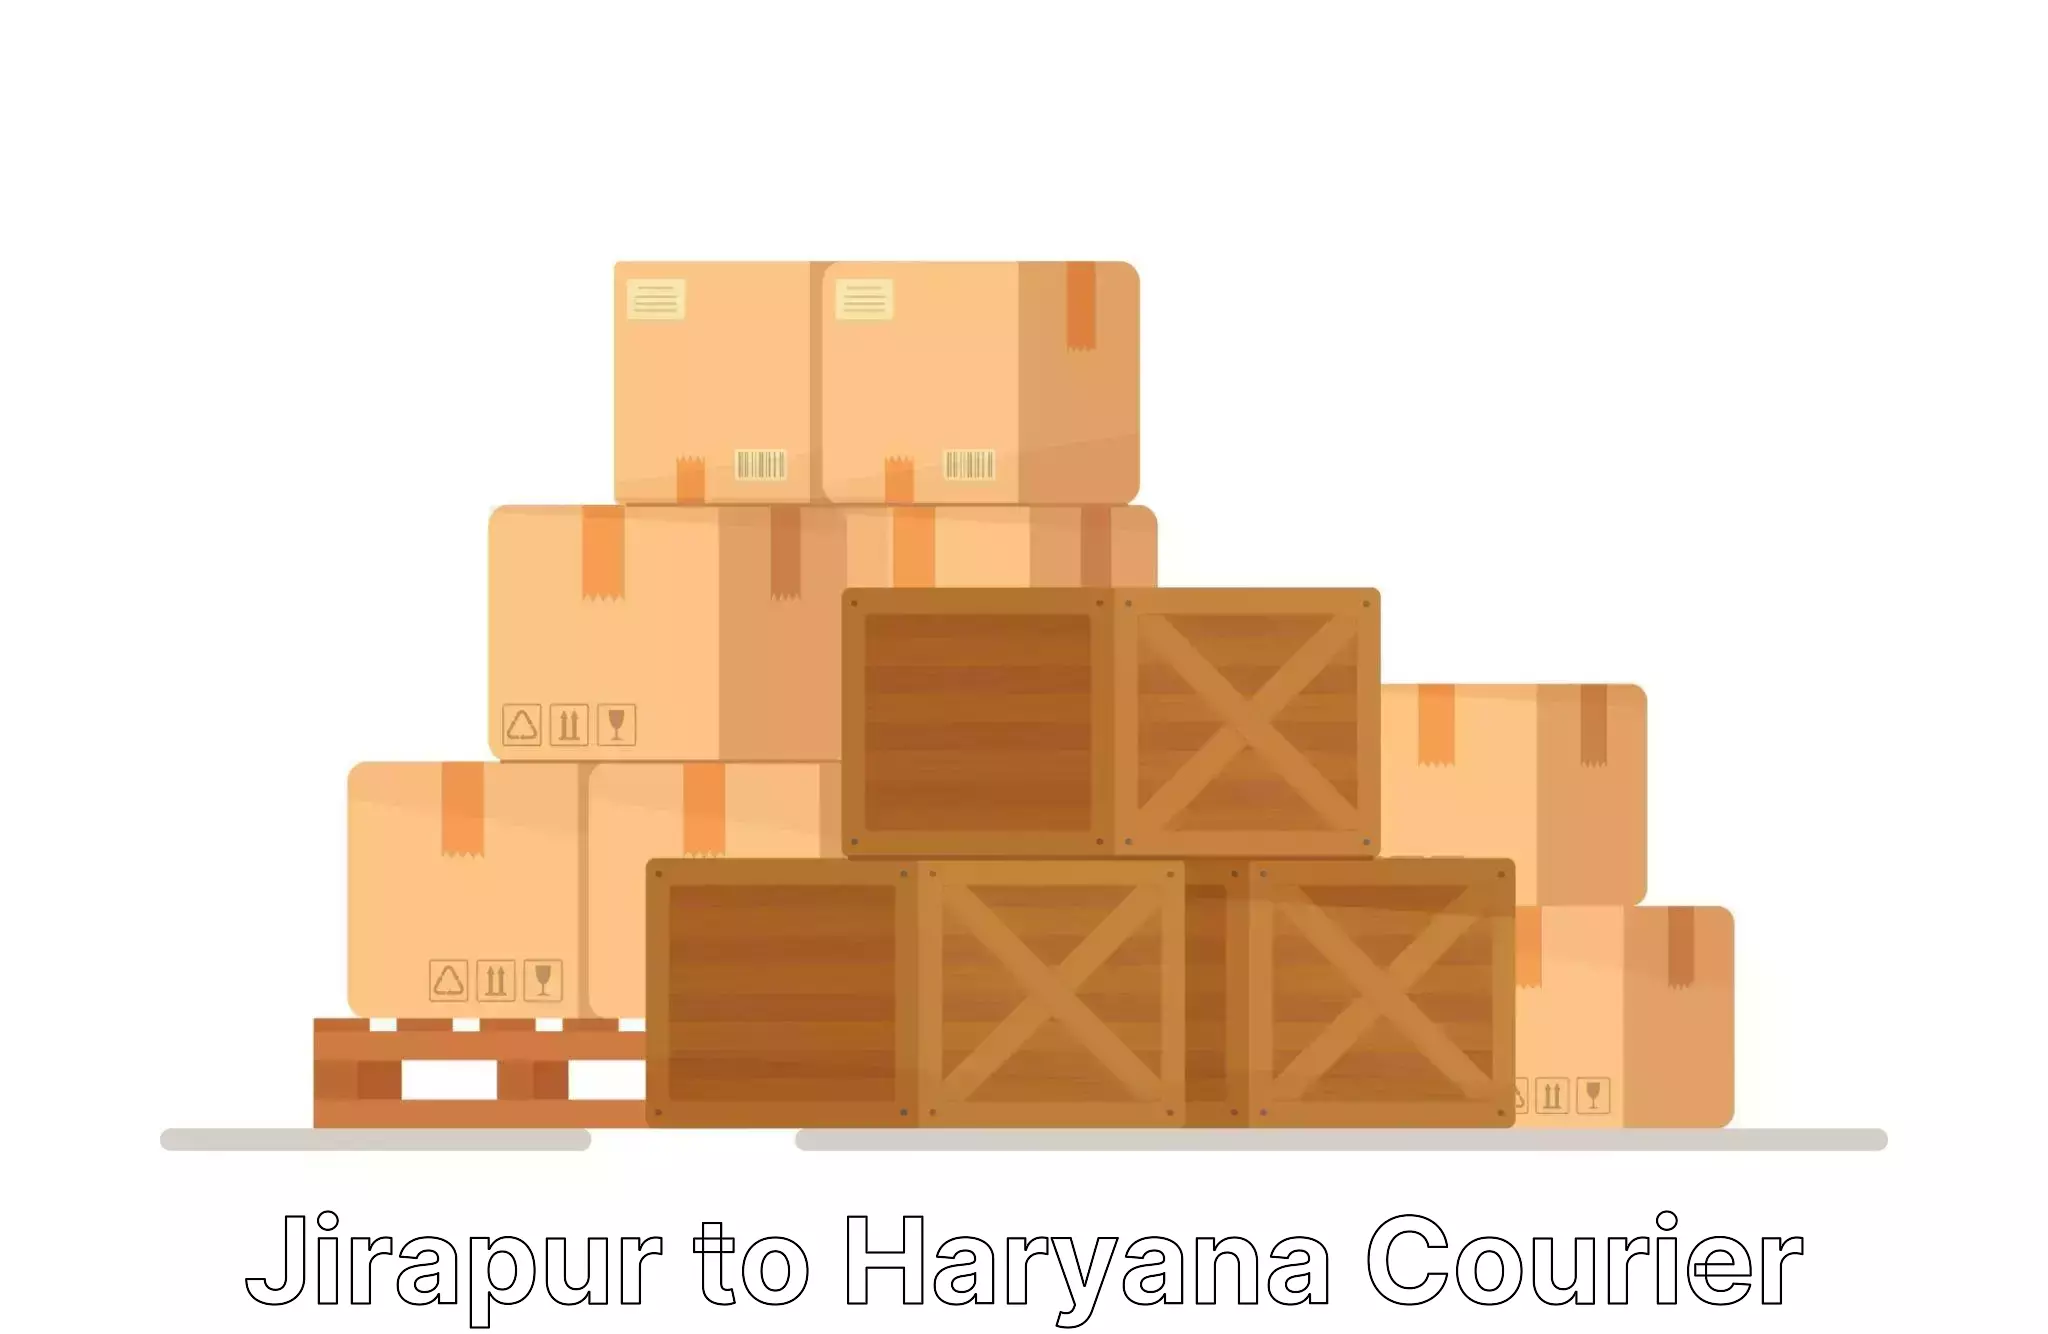 Packing and moving services Jirapur to Yamuna Nagar